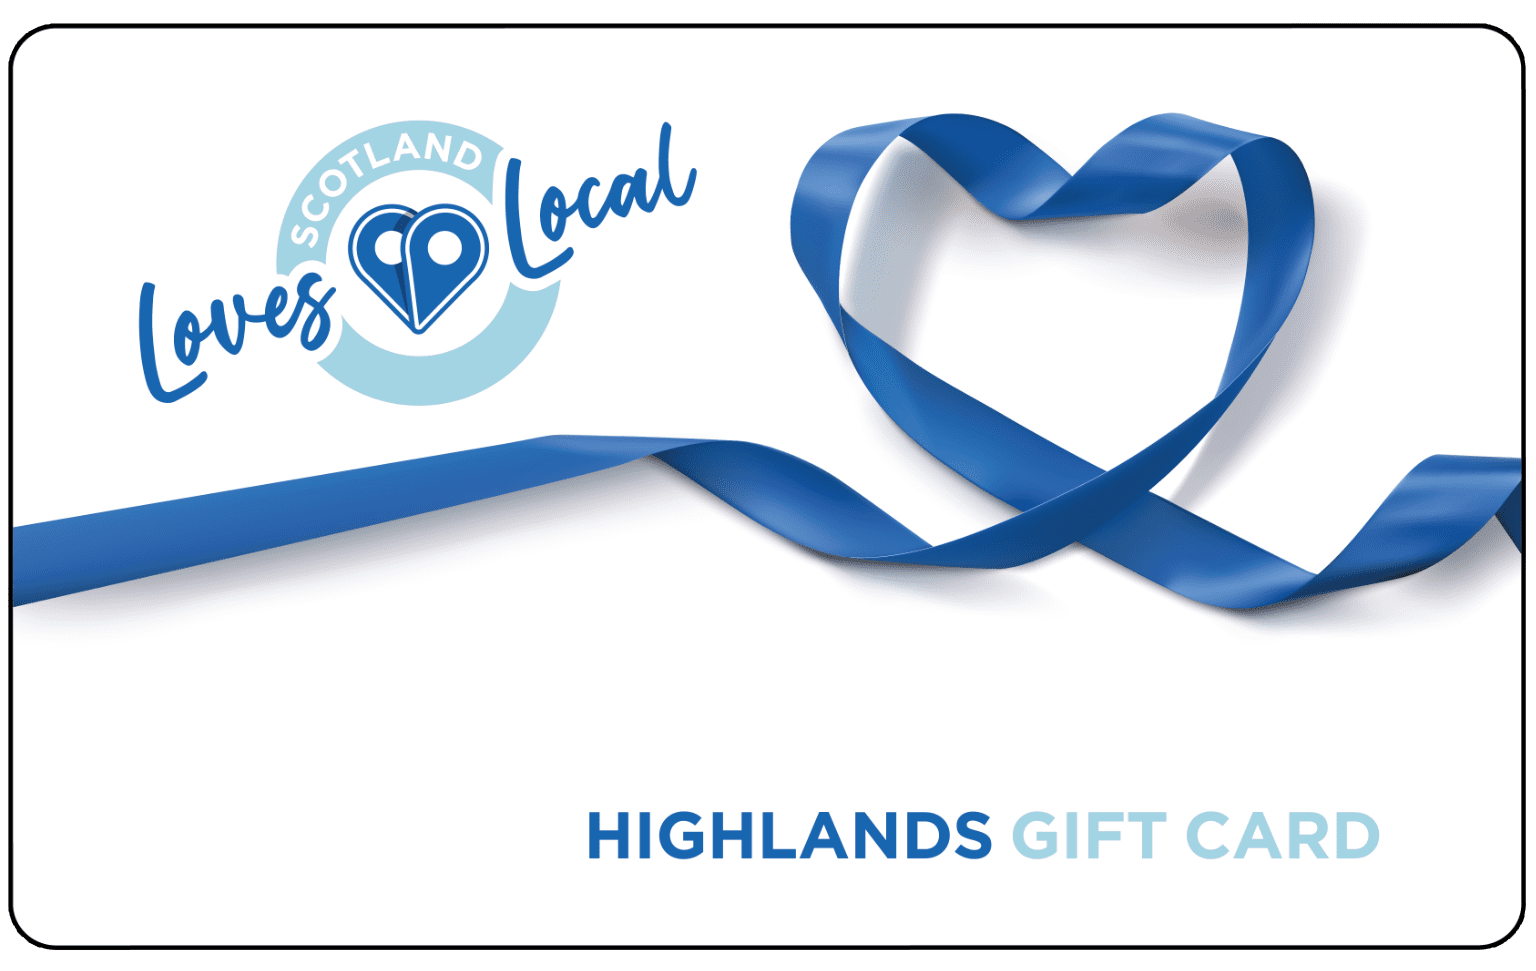 Highlands Gift Card